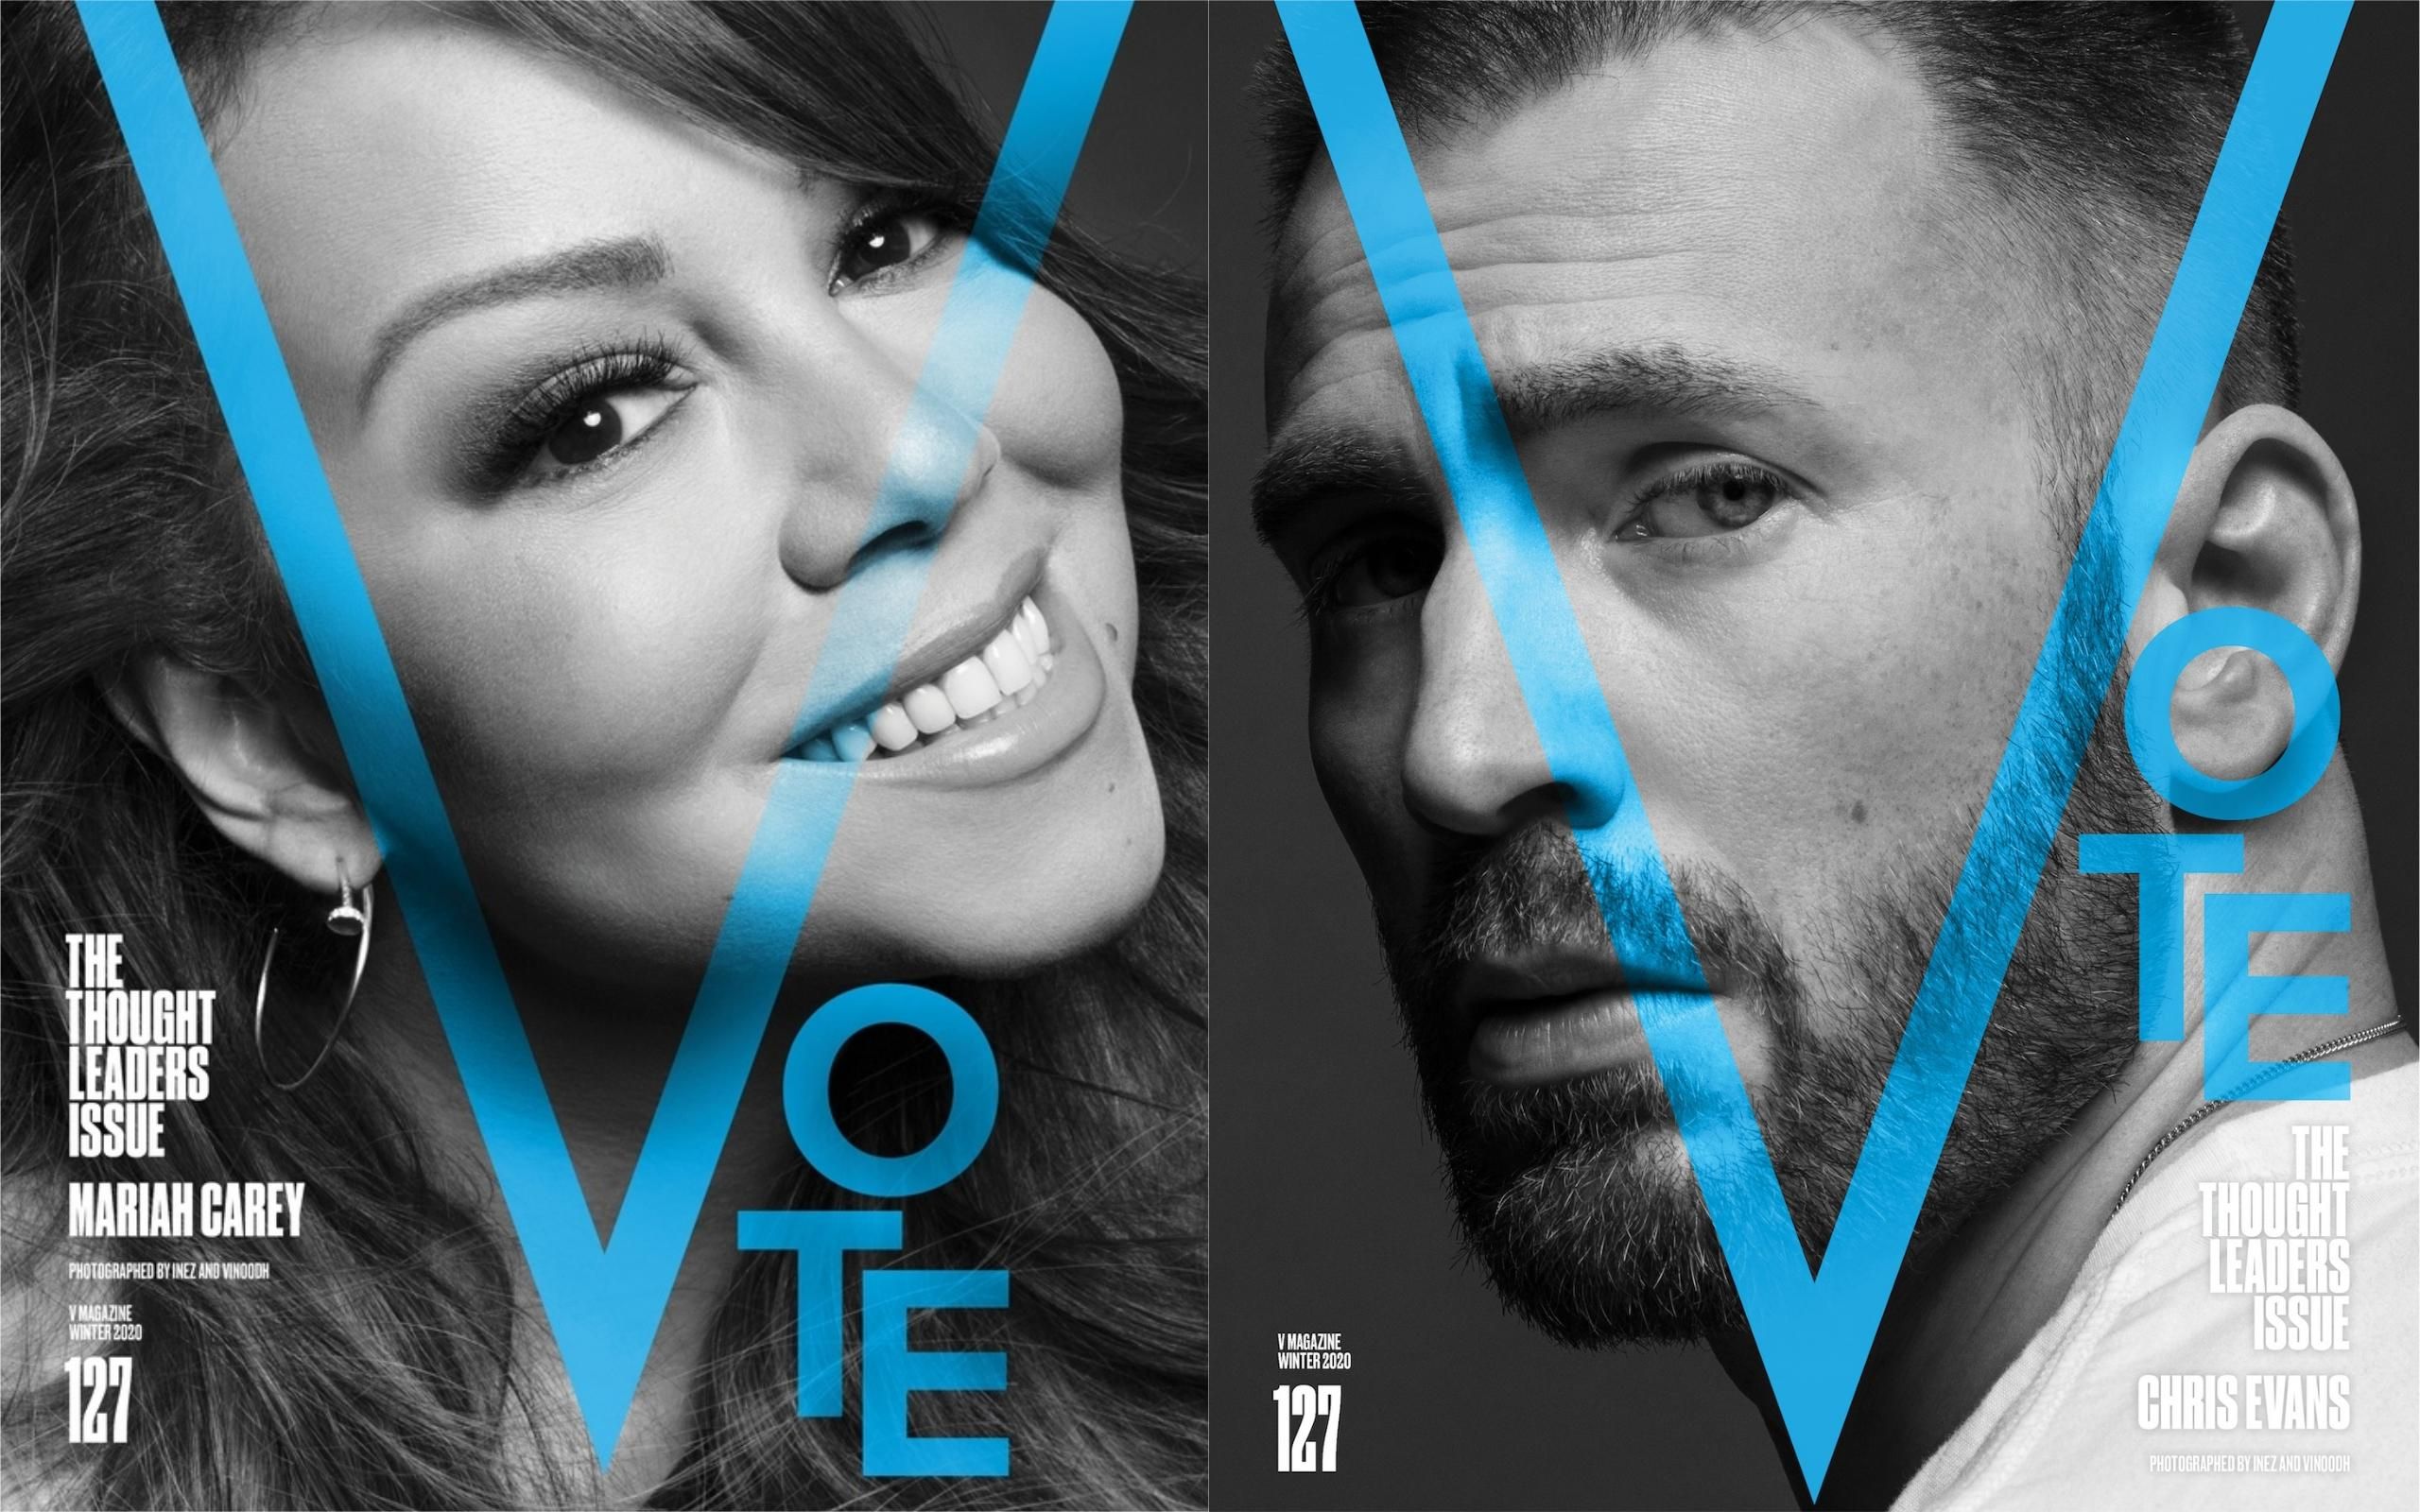 V is for Vote: американские звезды приняли участие в символической фотосессии перед выборами